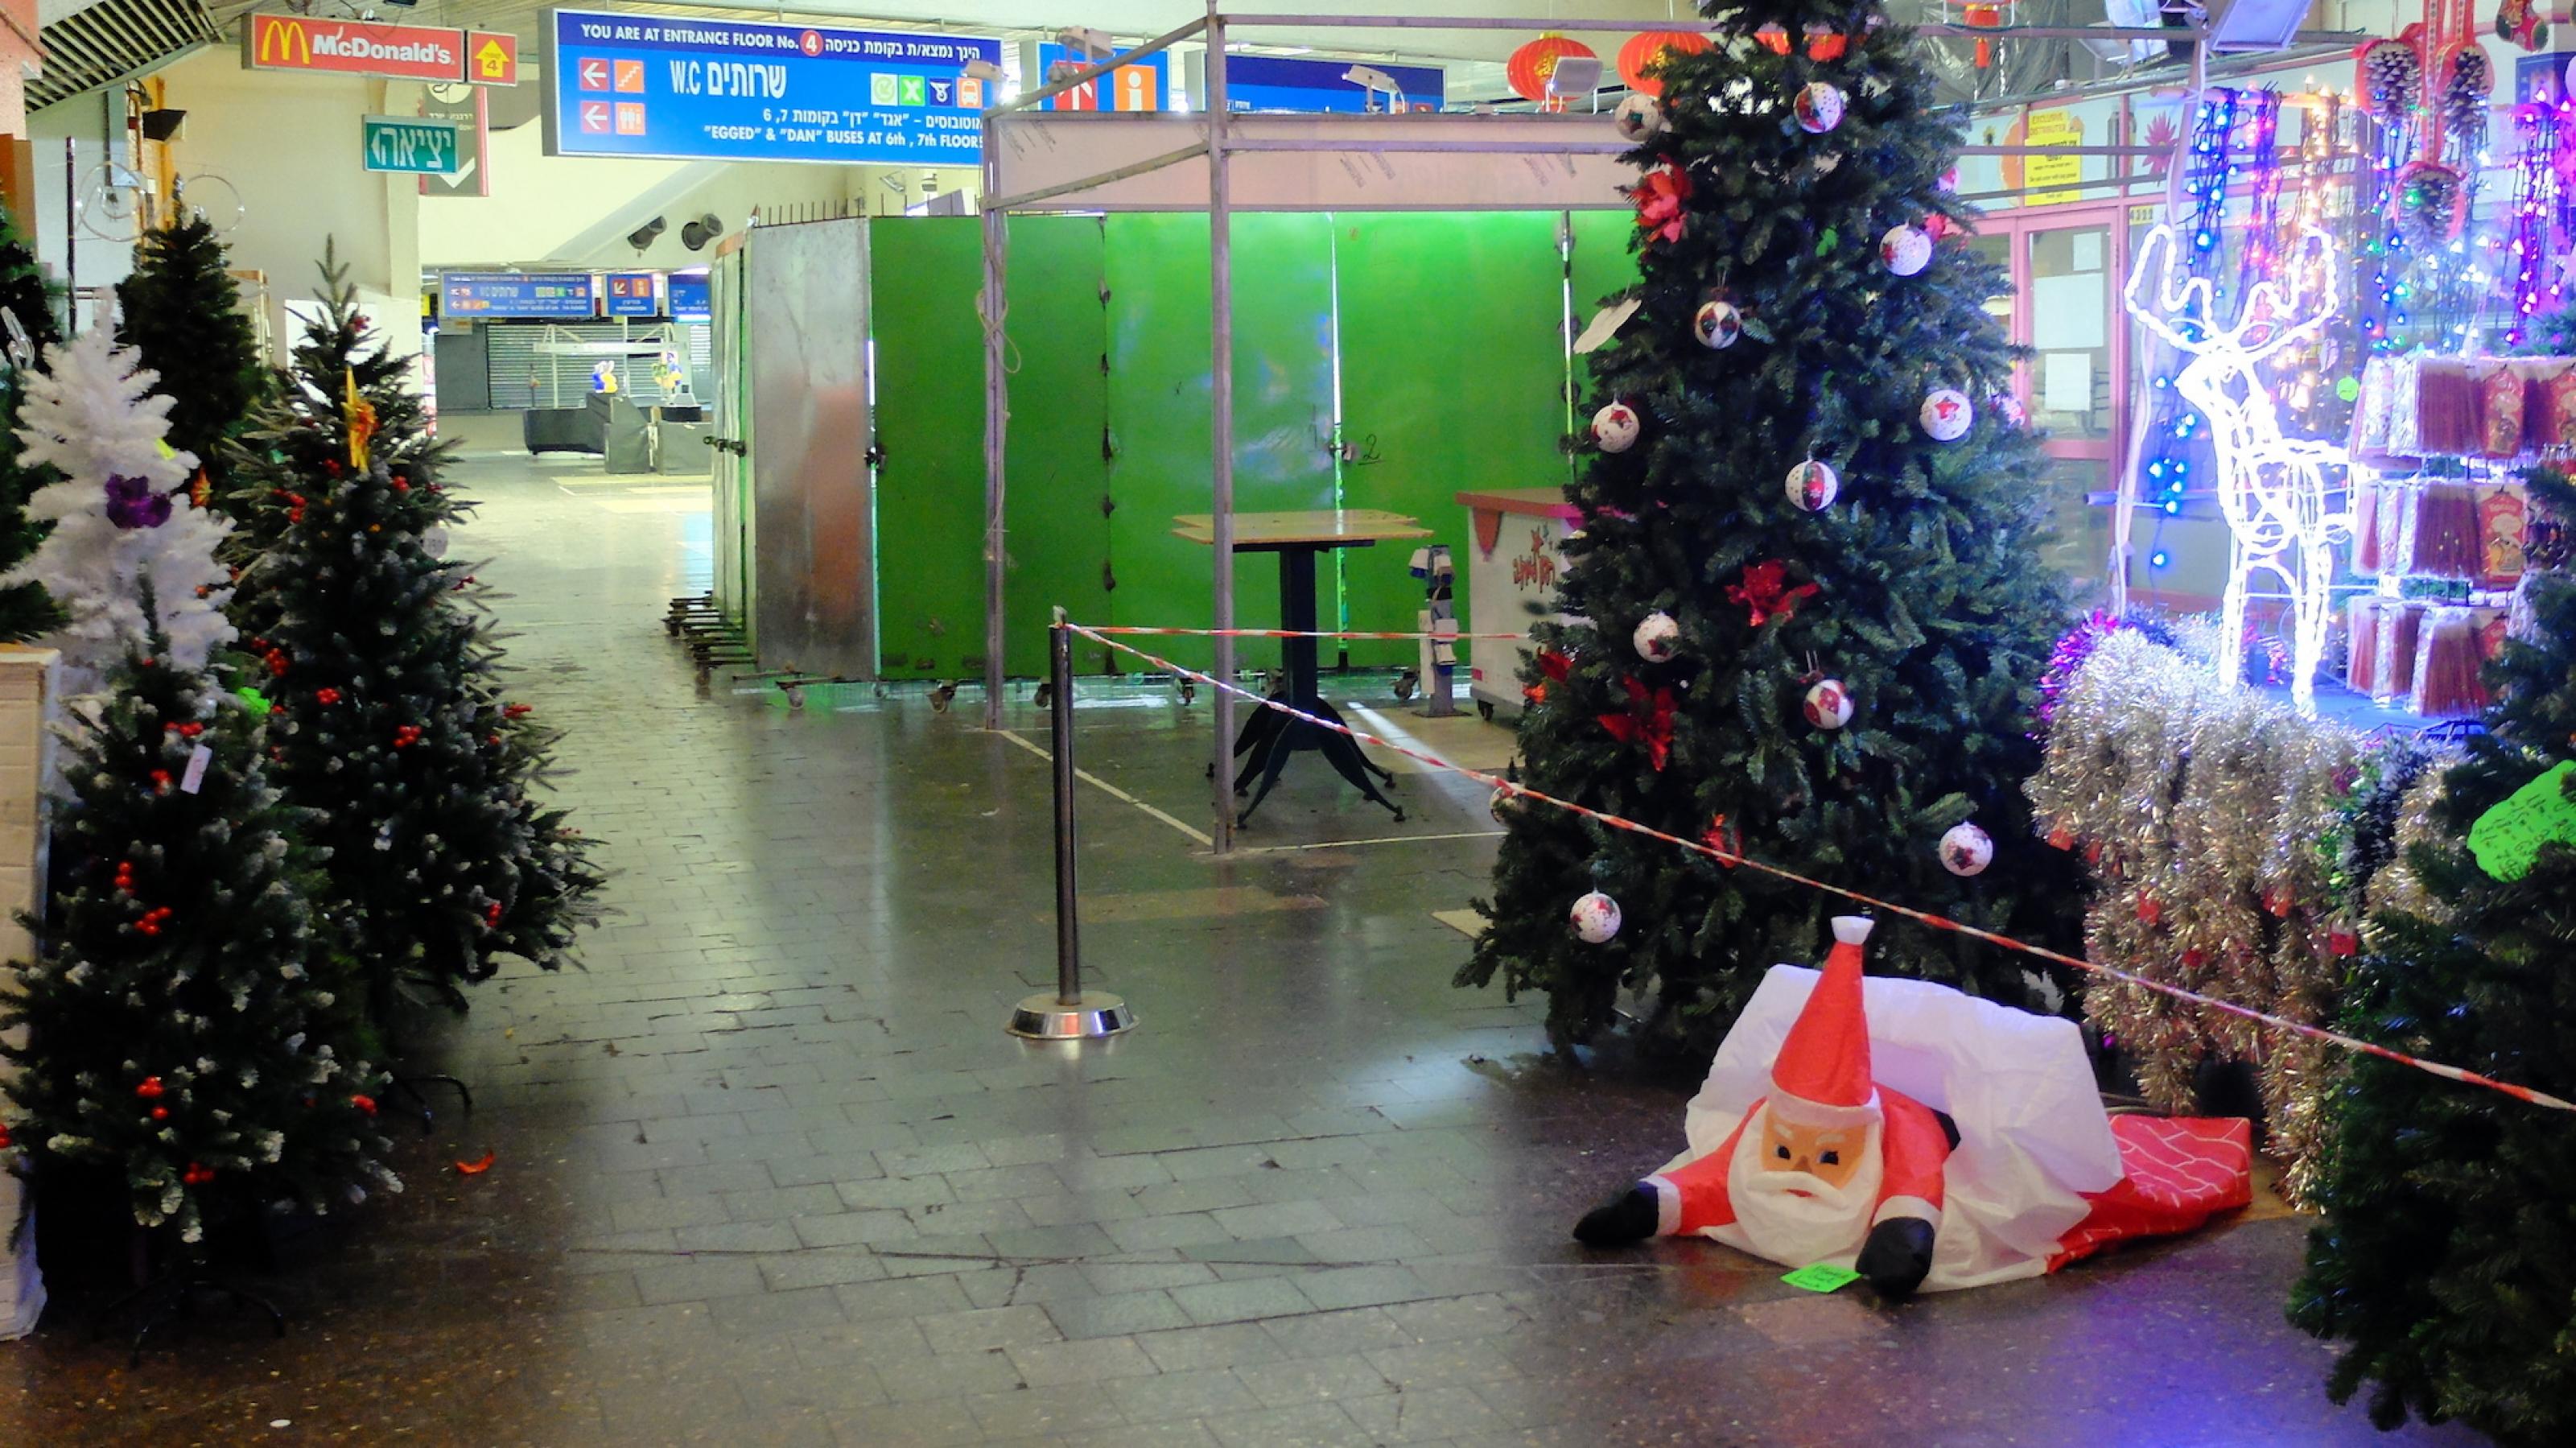 Immerhin synthetische Weihnachtsbäume gibt es in der Zentralen Busstation in Tel Aviv zu kaufen, gleich neben den Spezialitäten der filipinischen Gastarbeiter.